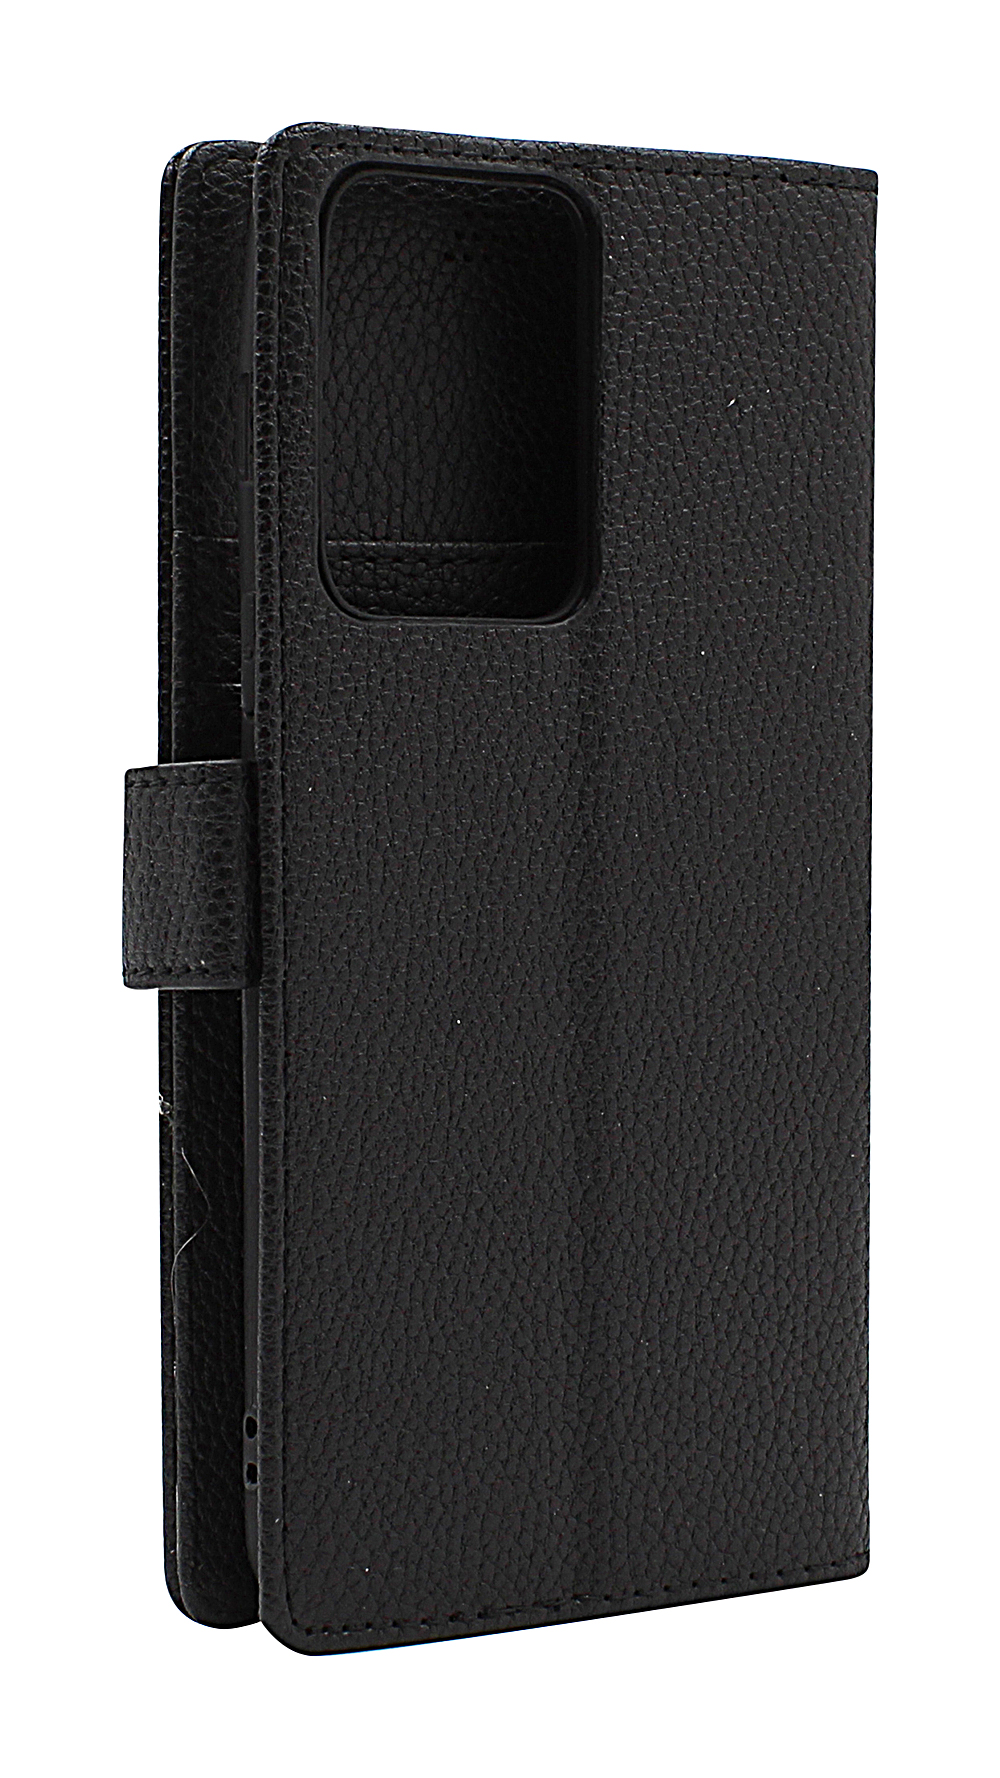 billigamobilskydd.seNew Standcase Wallet OnePlus Nord 2T 5G